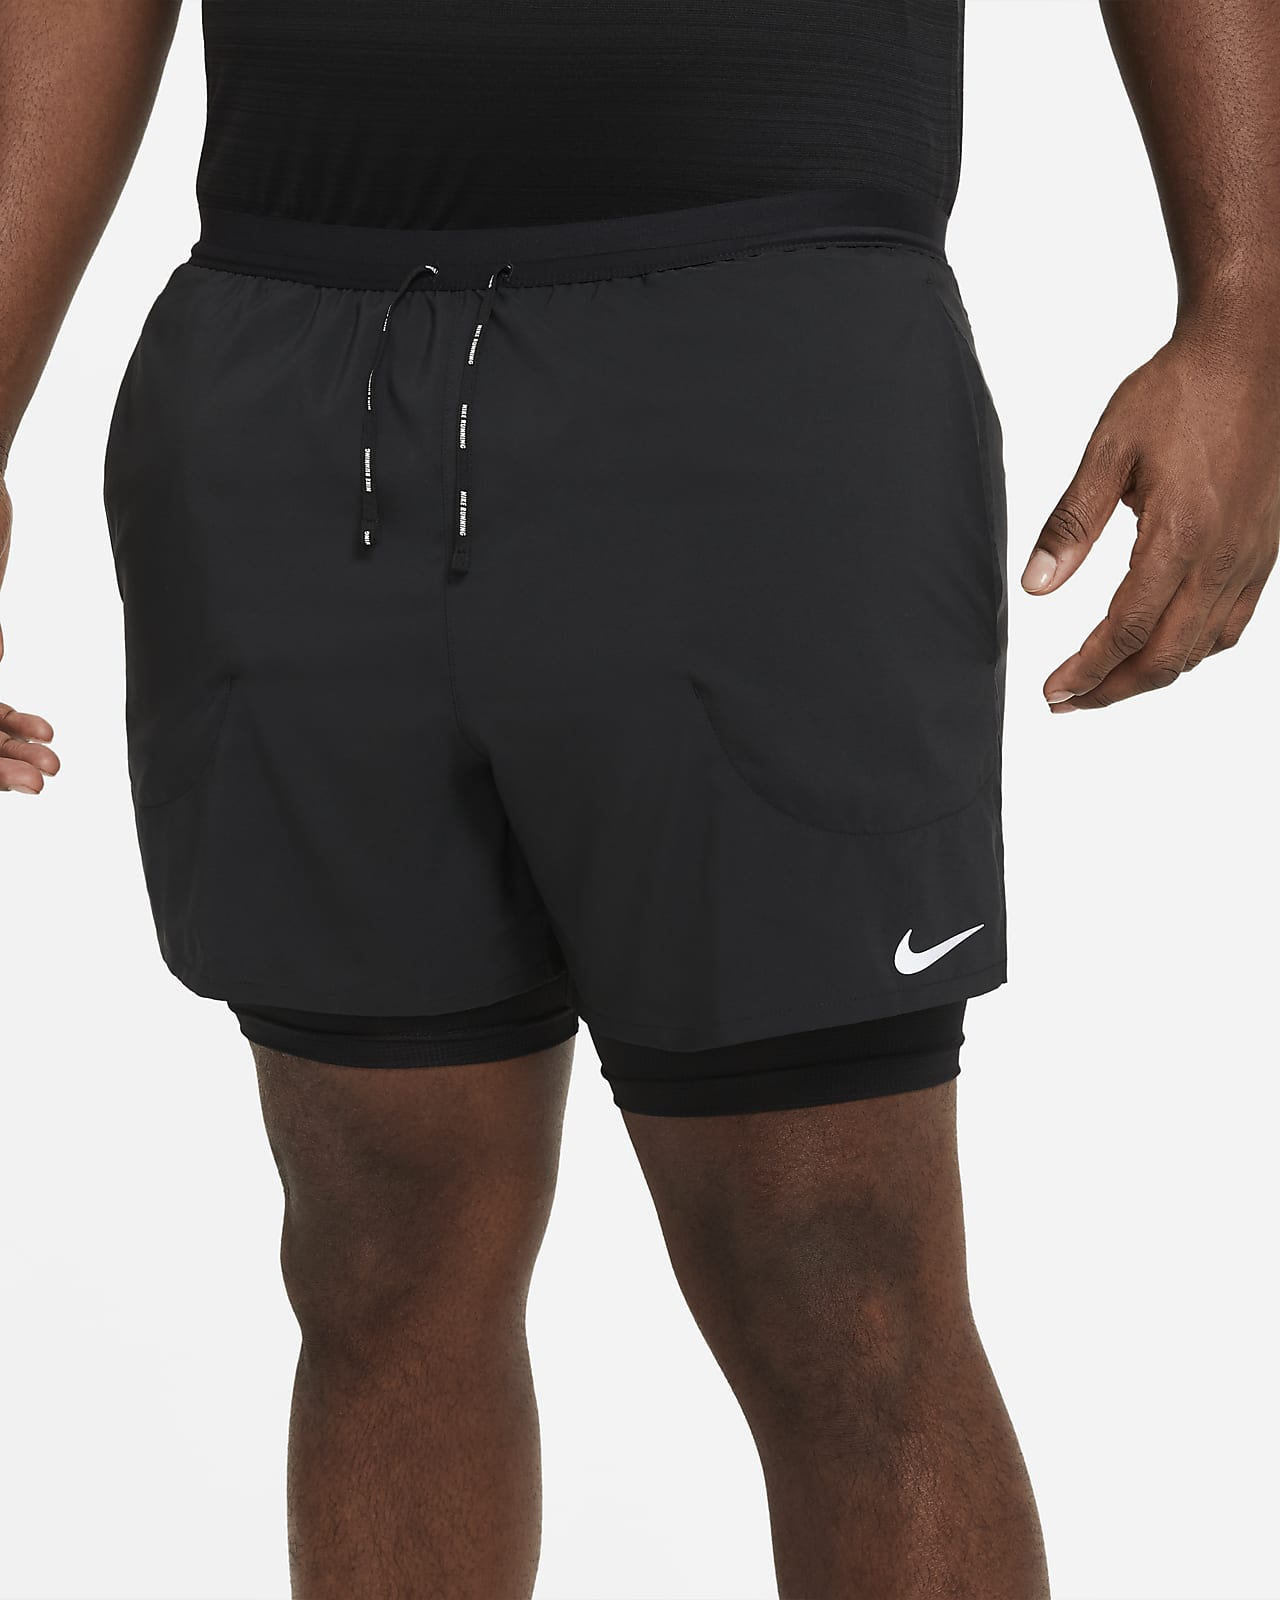 Reportero podar soborno Shorts de running 2 en 1 de 13 cm para hombre Nike Flex Stride. Nike.com